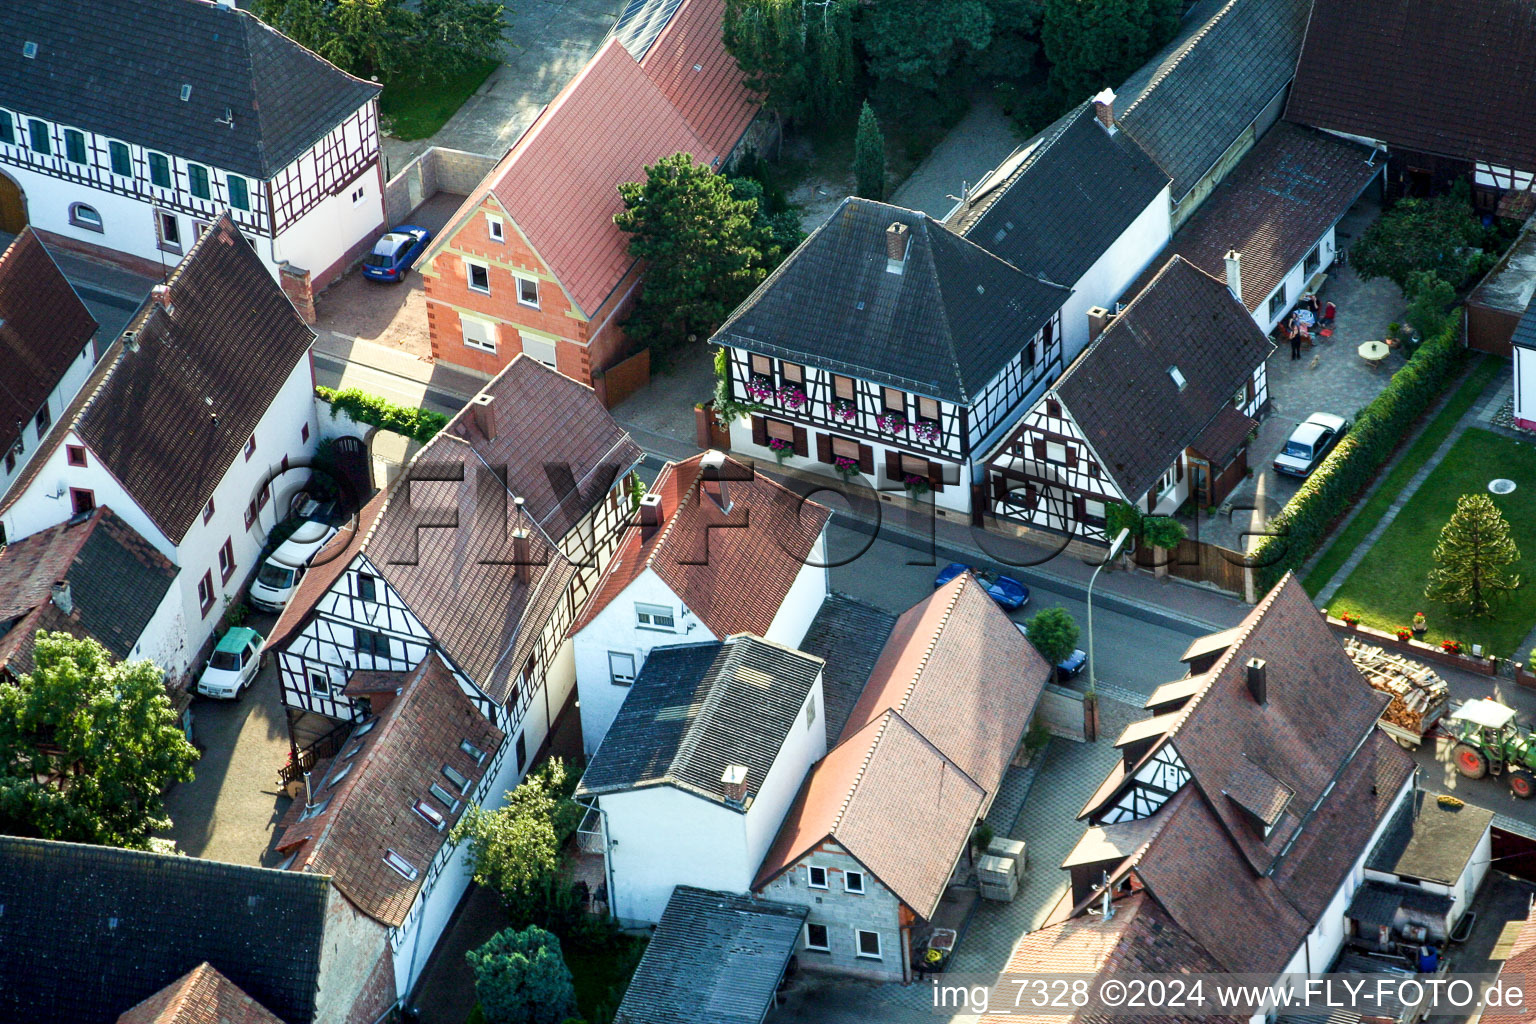 Vue sur le village à Barbelroth dans le département Rhénanie-Palatinat, Allemagne hors des airs